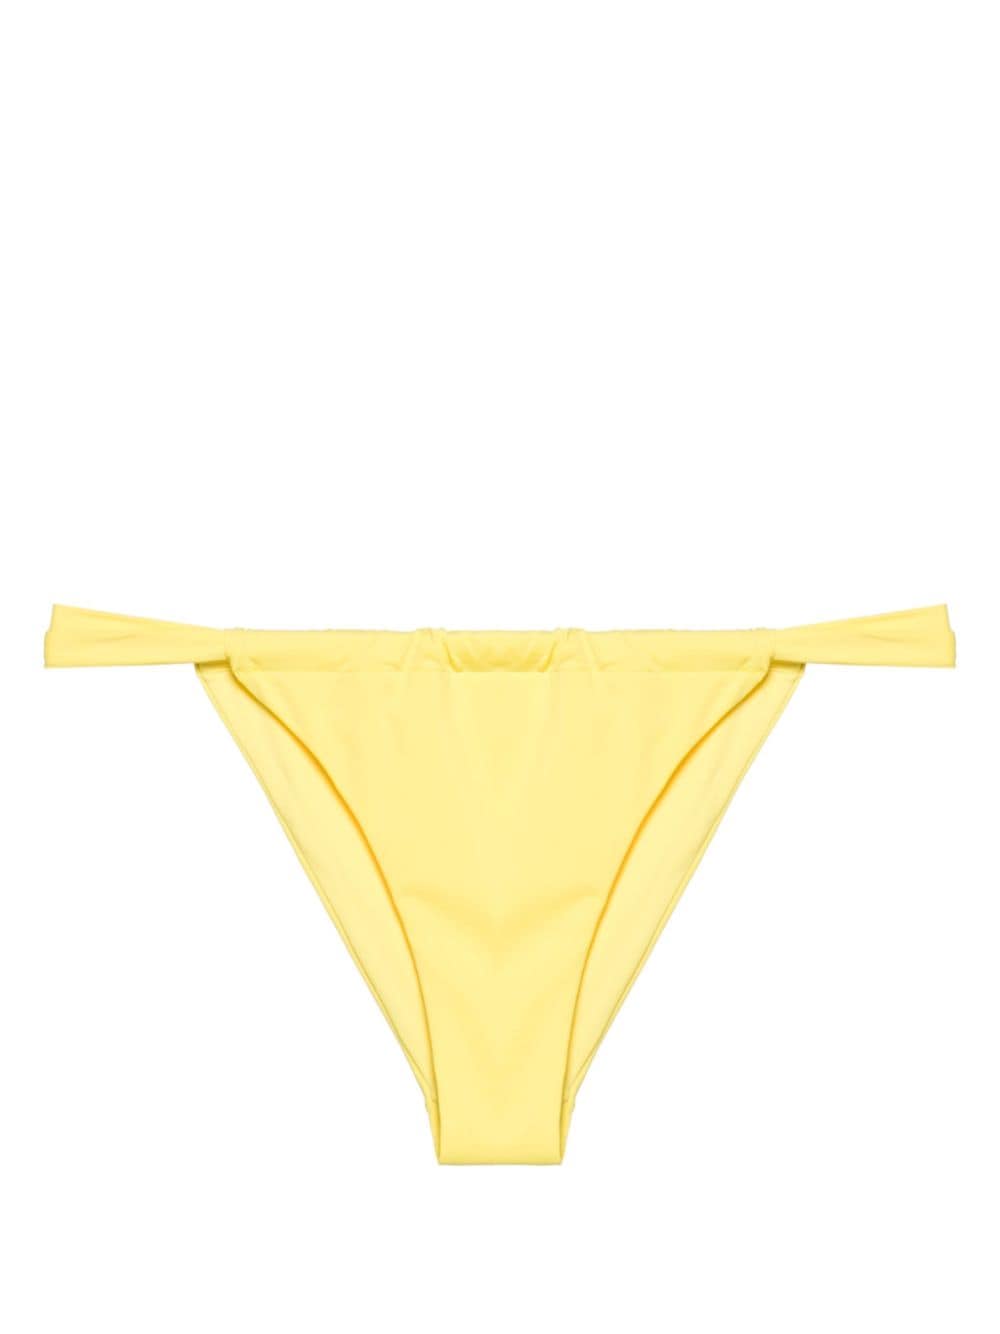 Bas de maillot de bain femme jaune